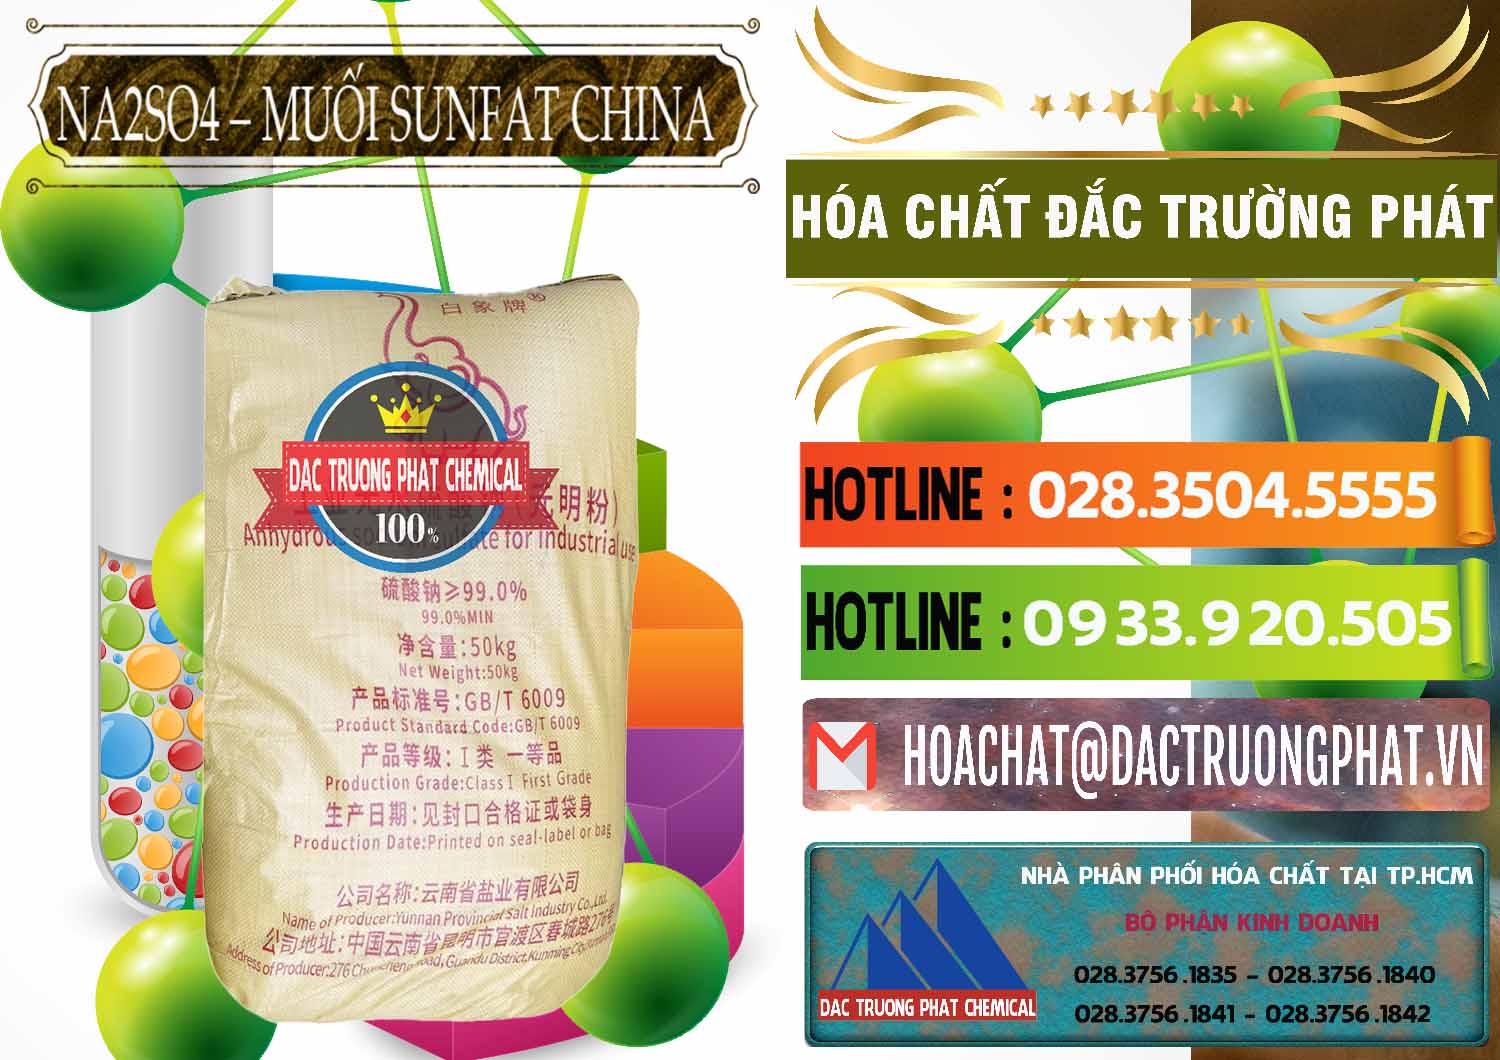 Cty chuyên bán - cung cấp Sodium Sulphate - Muối Sunfat Na2SO4 Logo Con Voi Trung Quốc China - 0409 - Phân phối & cung ứng hóa chất tại TP.HCM - cungcaphoachat.com.vn